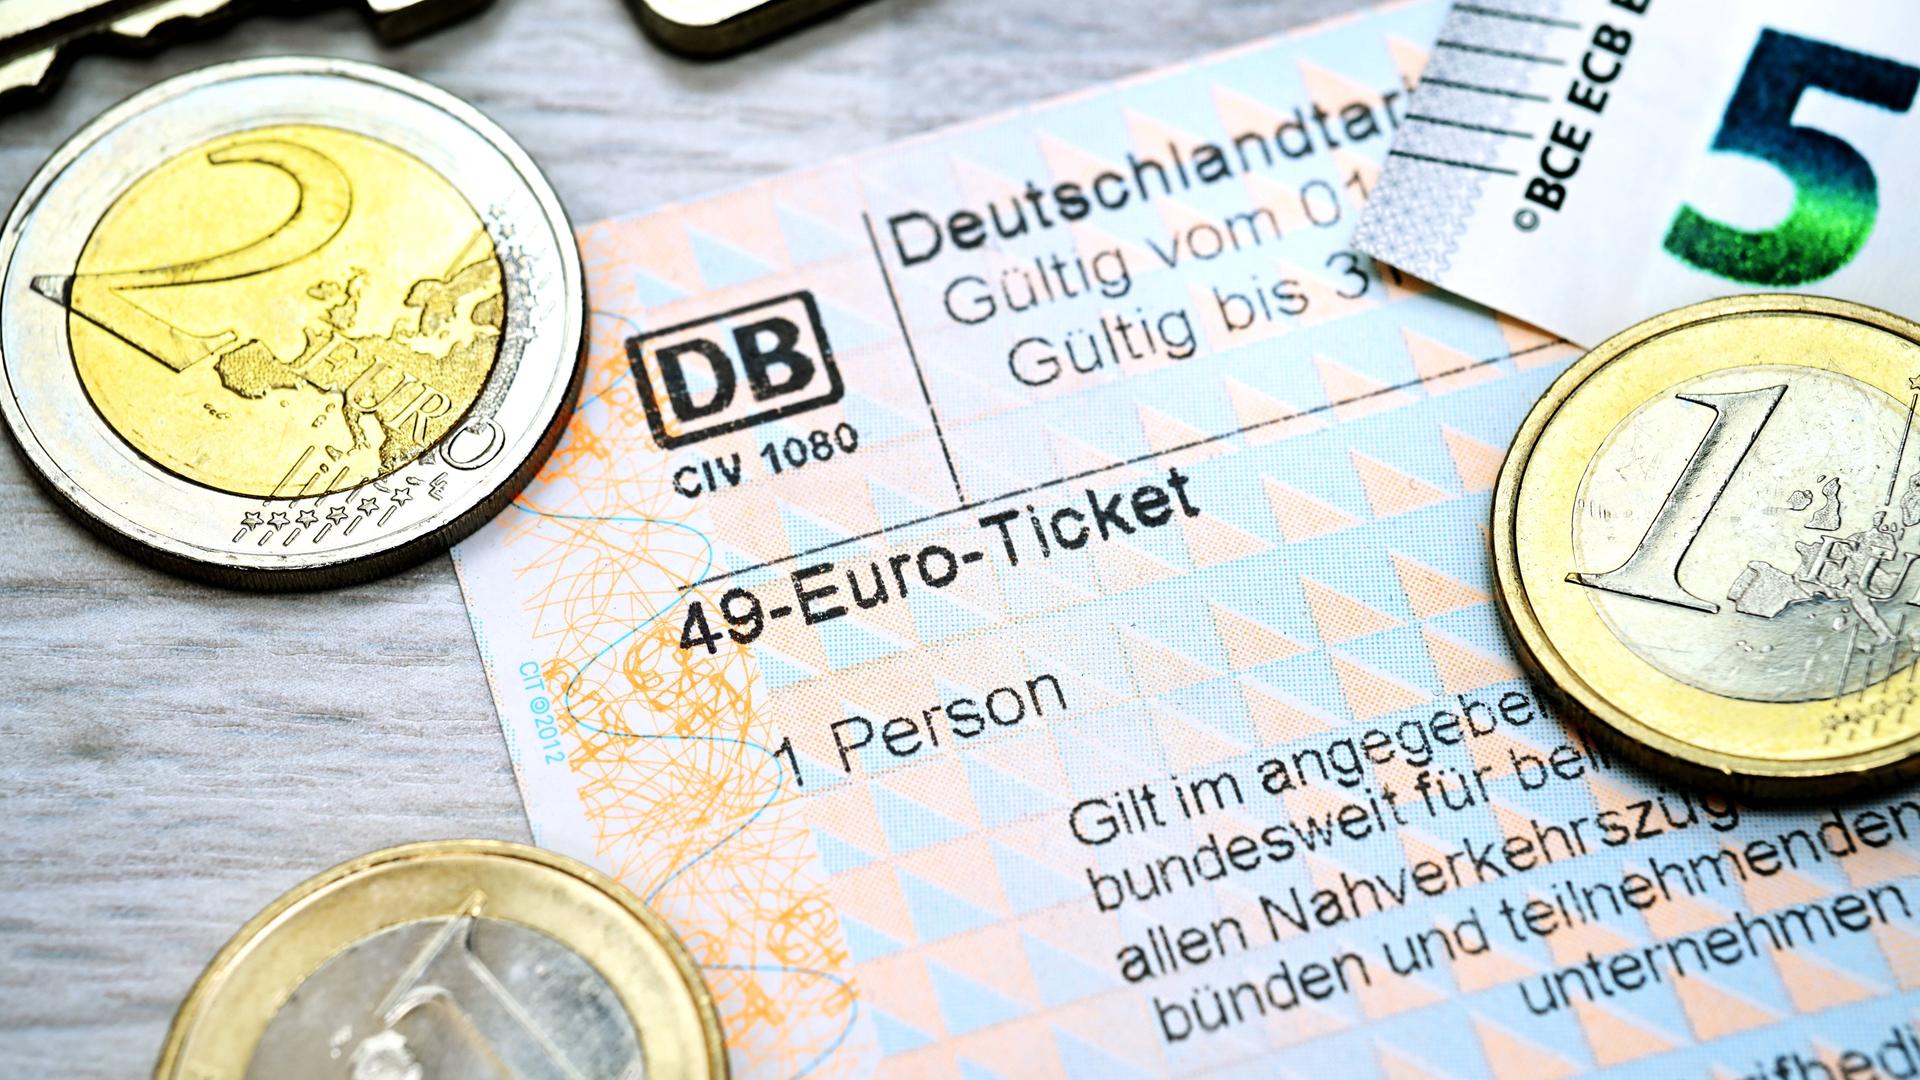 Fahrschein mit Aufschrift 49-Euro-Ticket und Euromünzen.